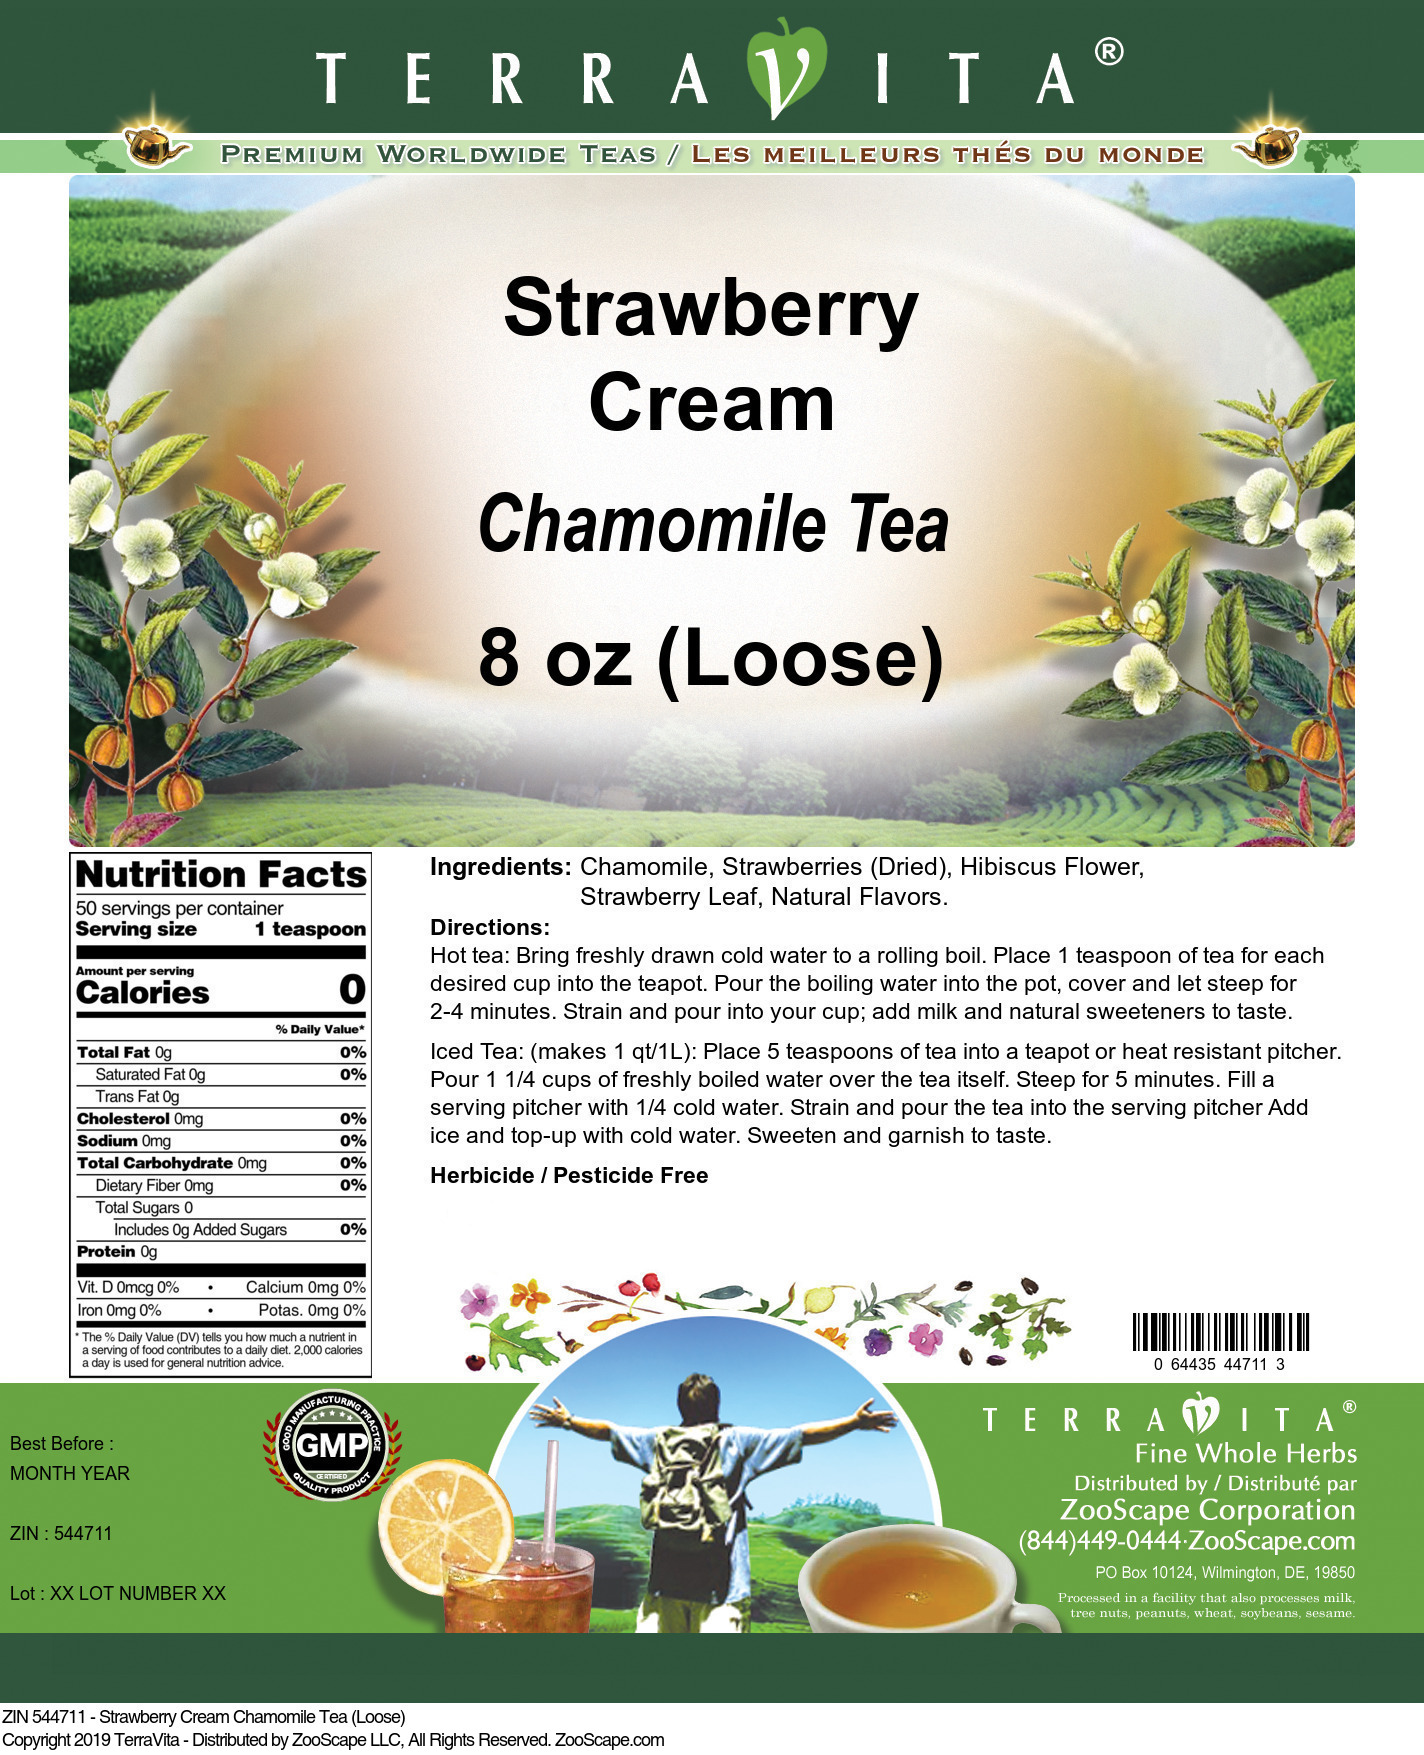 Strawberry Cream Chamomile Tea (Loose) - Label